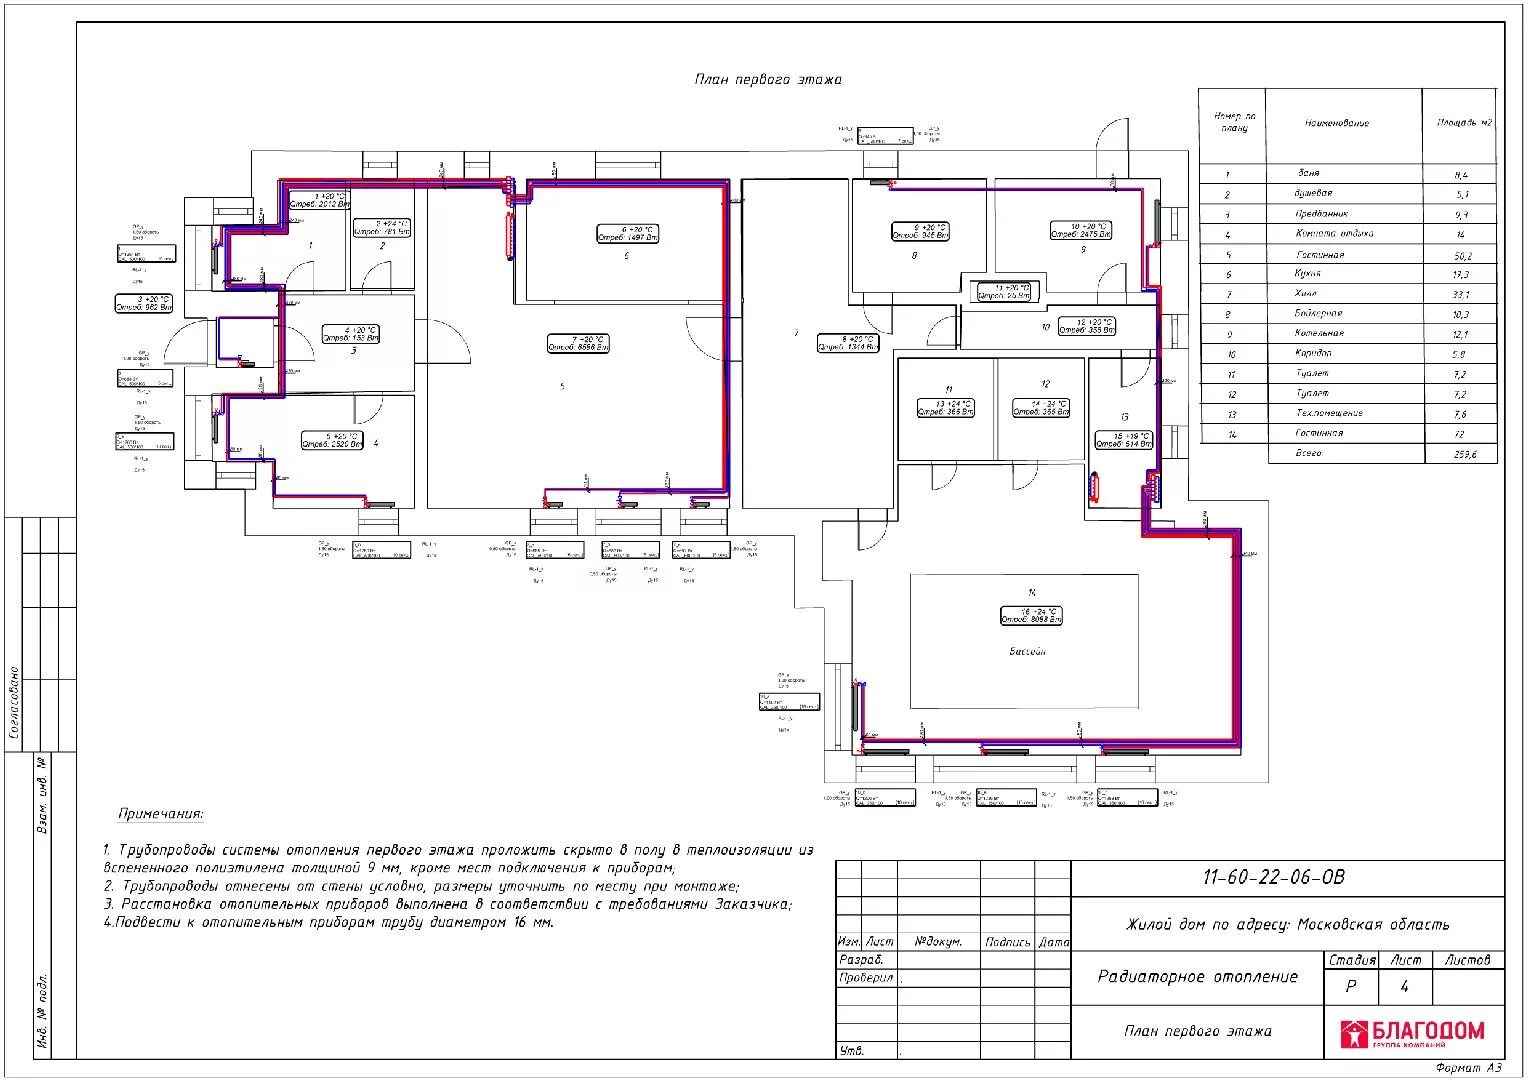 Переустройство отопления. План отопления. План отопления этажа. Планировка отопительной системы. Система отопления на плане этажа.